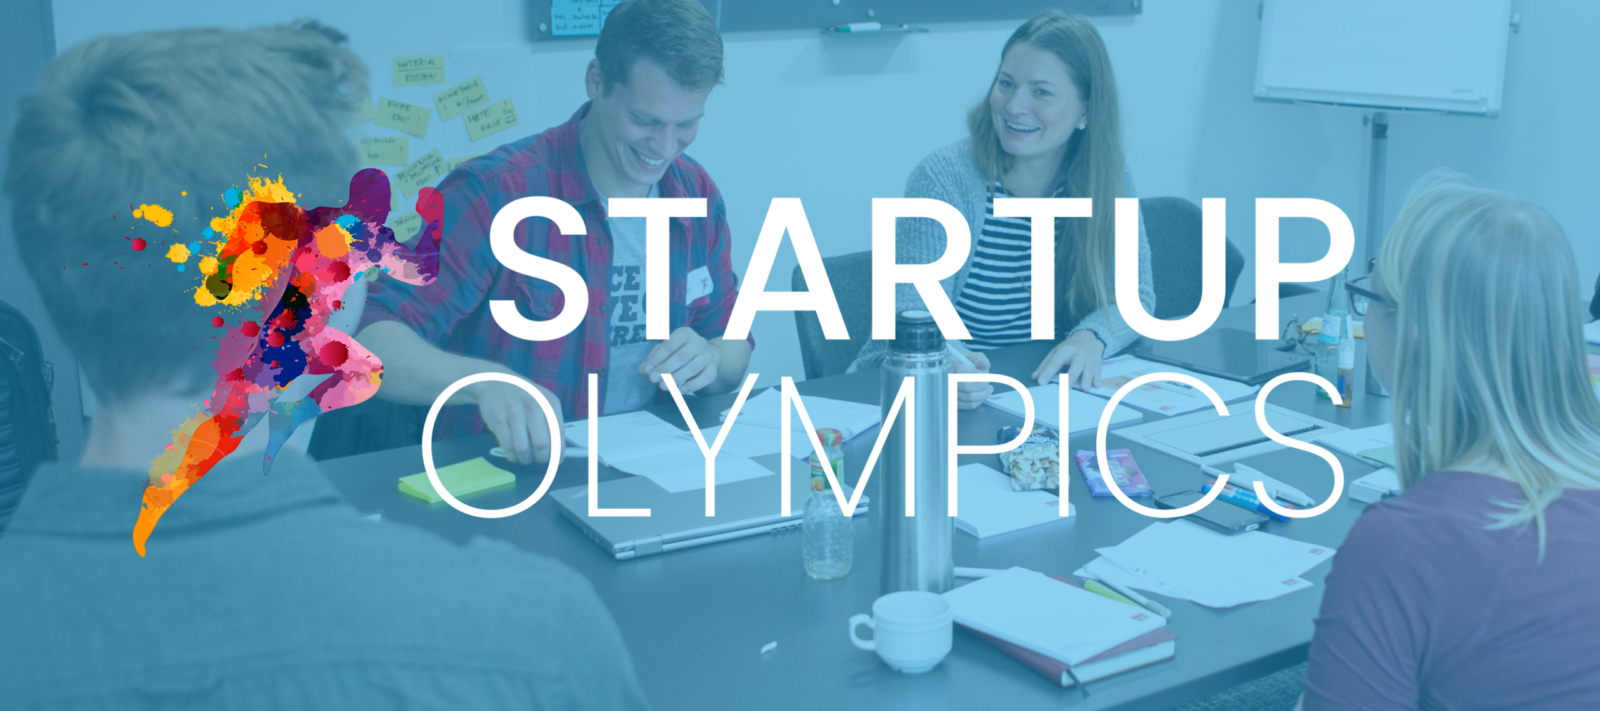 Startup-Essen – Startup Olympics - in 52 Stunden zum eigenen Start-up